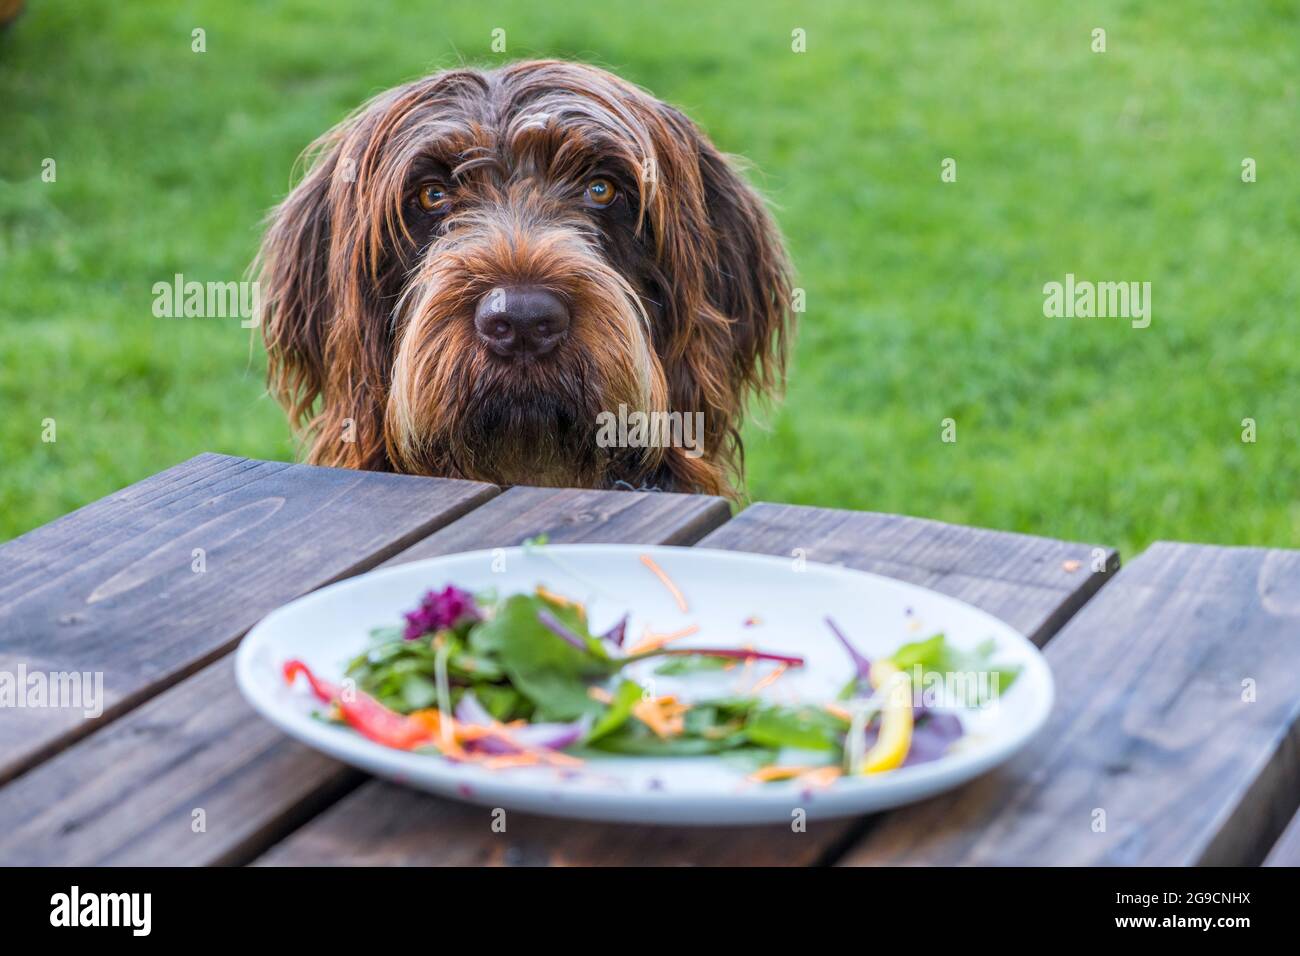 Un chien Griffon Korthals avec un regard de plaident ou de culpabilité. Une assiette avec les restes d'une salade et pas de viande au premier plan. Banque D'Images